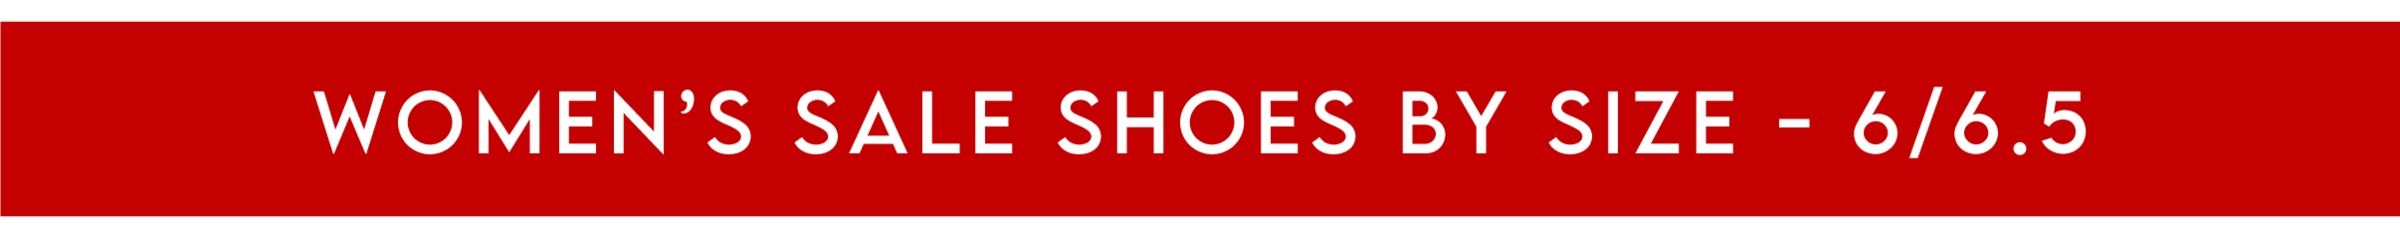 Women's Sale Shoes - Size 6/6.5